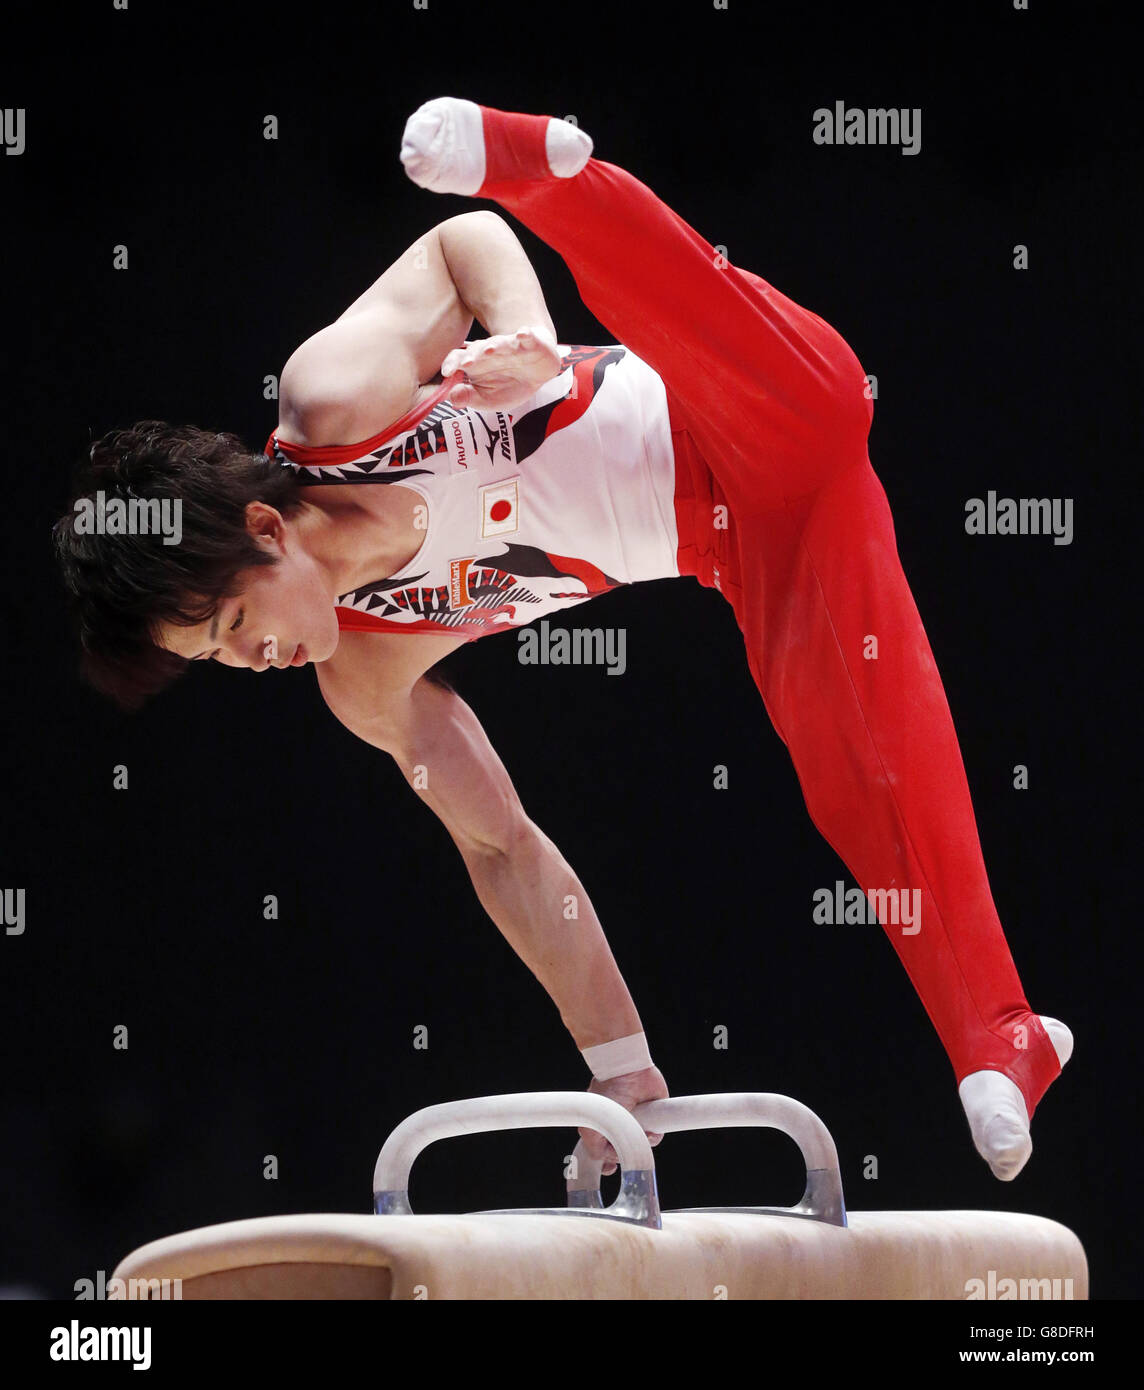 Gymnastik - Weltmeisterschaften 2015 - Tag drei - das SSE Hydro. Der japanische Ryohei Kato tritt am dritten Tag der Weltmeisterschaften 2015 beim SSE Hydro in Glasgow auf dem Pommel Horse an. Stockfoto